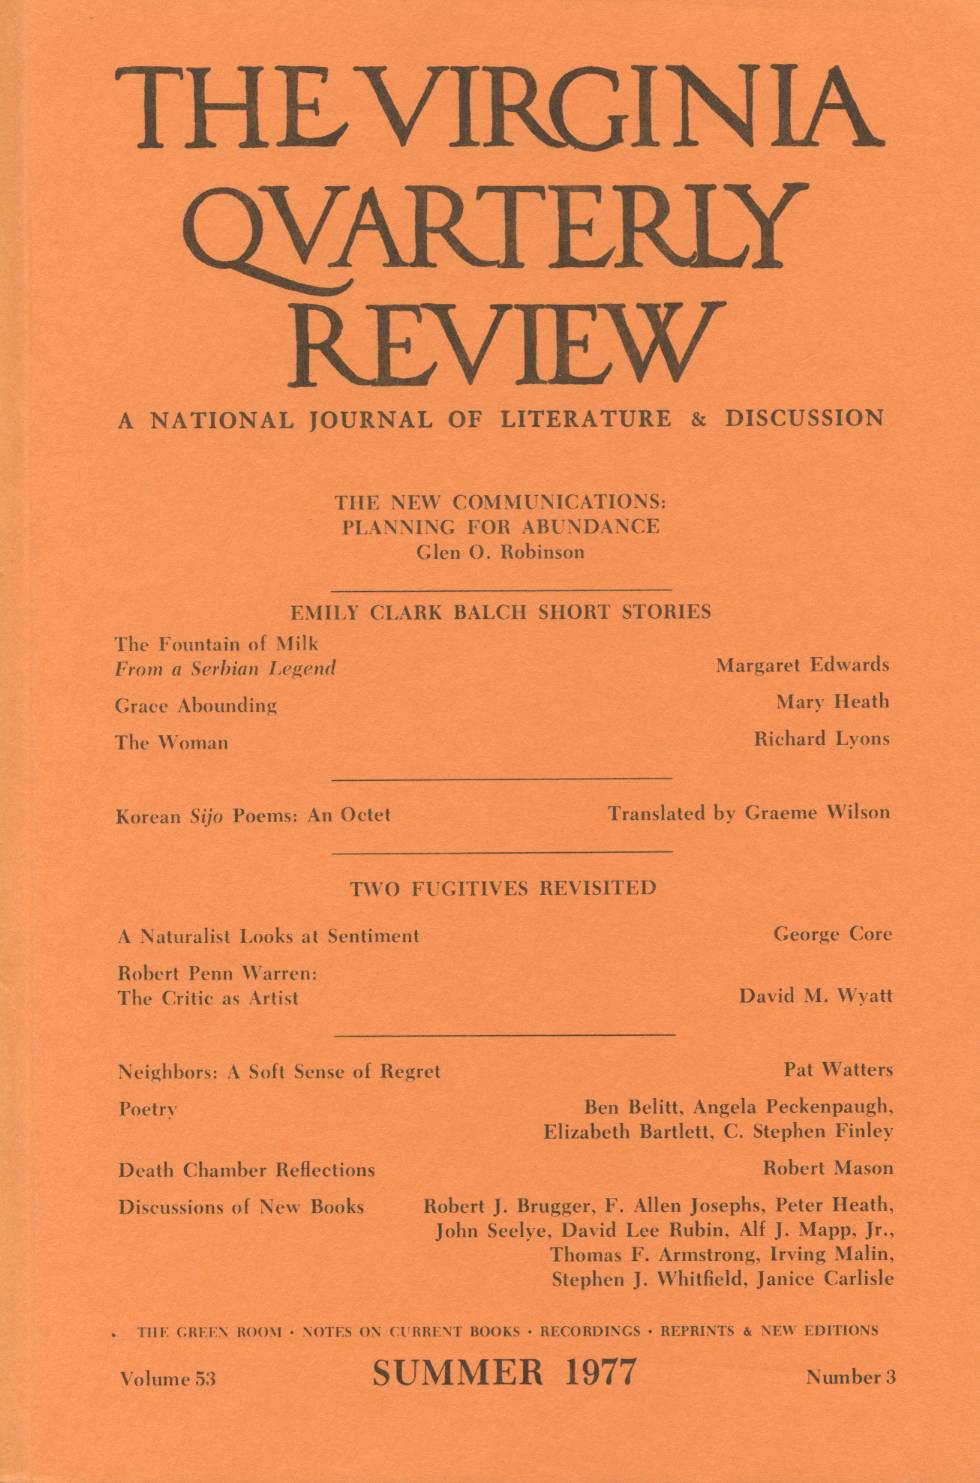 Virginia Quarterly Review, Summer 1977 cover